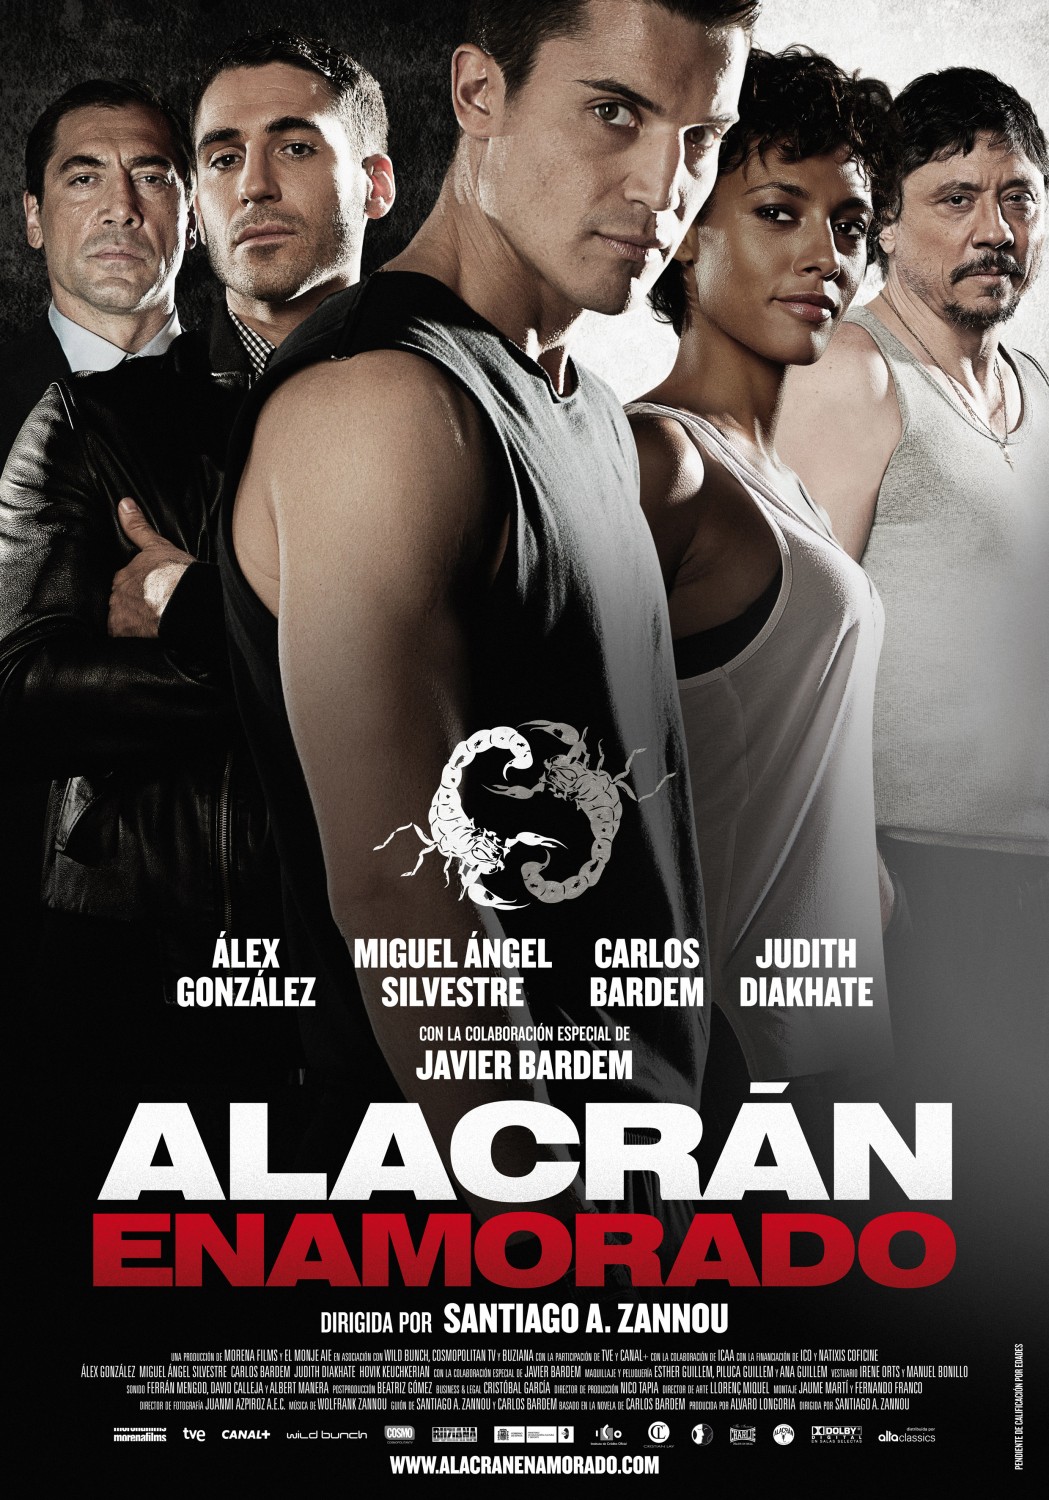 Extra Large Movie Poster Image for Alacrán enamorado (#1 of 2)